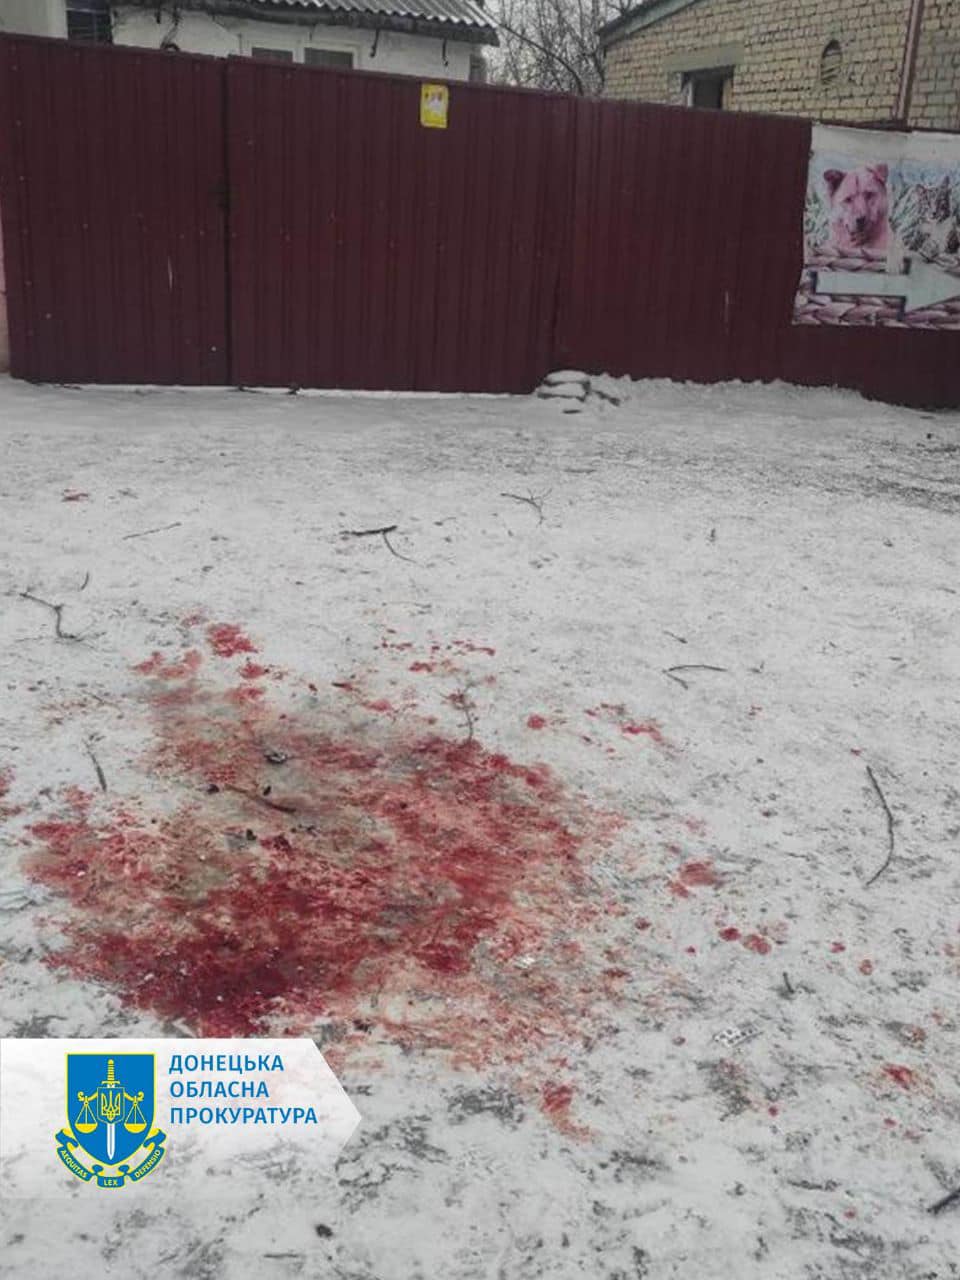 Житель Красногоровки обвинил продавца в некачественном товаре и бросил в него гранату: травмировались 5 человек, погиб прохожий 2